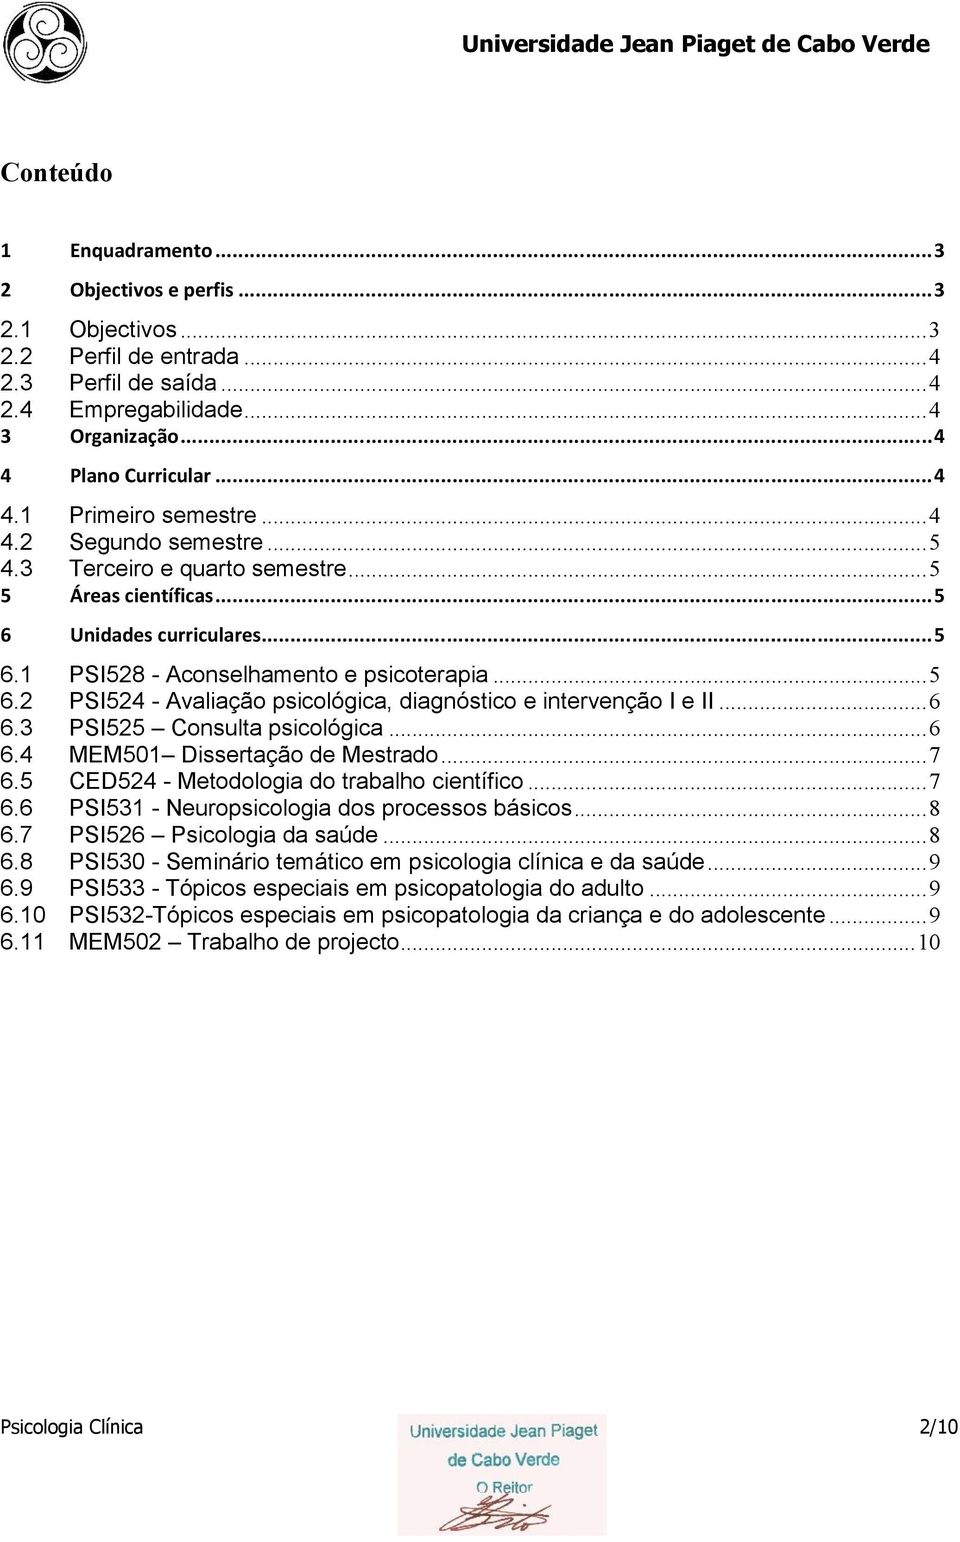 ..6 6.3 PSI525 Consulta psicológica...6 6.4 MEM501 Dissertação de Mestrado...7 6.5 CED524 - Metodologia do trabalho científico...7 6.6 PSI531 - Neuropsicologia dos processos básicos...8 6.